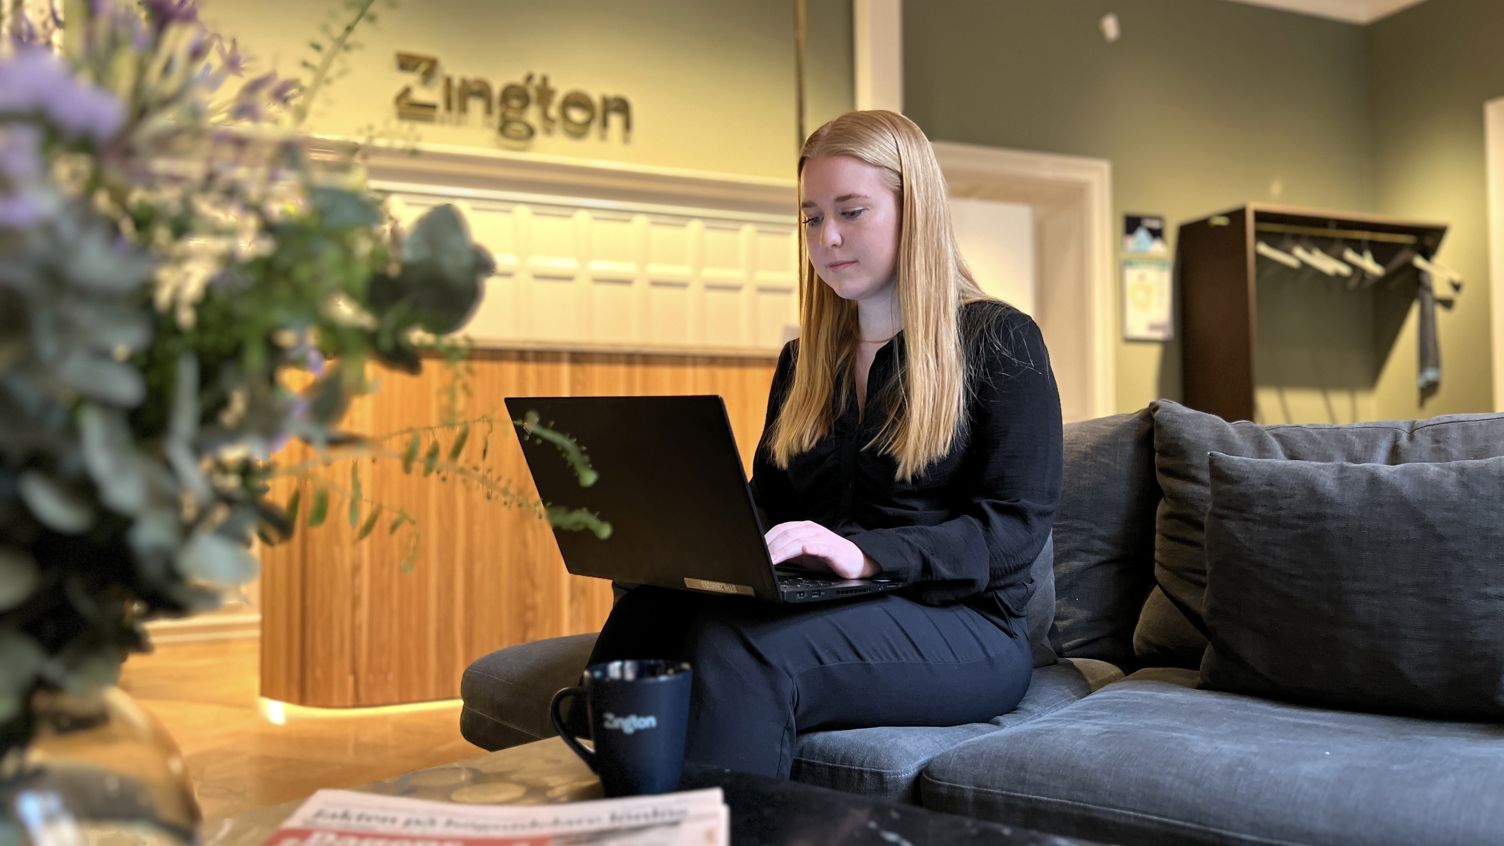 Zingtons medarbetare Melanie sitter i en soffa i företagets gröna lobby, engagerad i sitt arbete på en laptop i hennes famn.